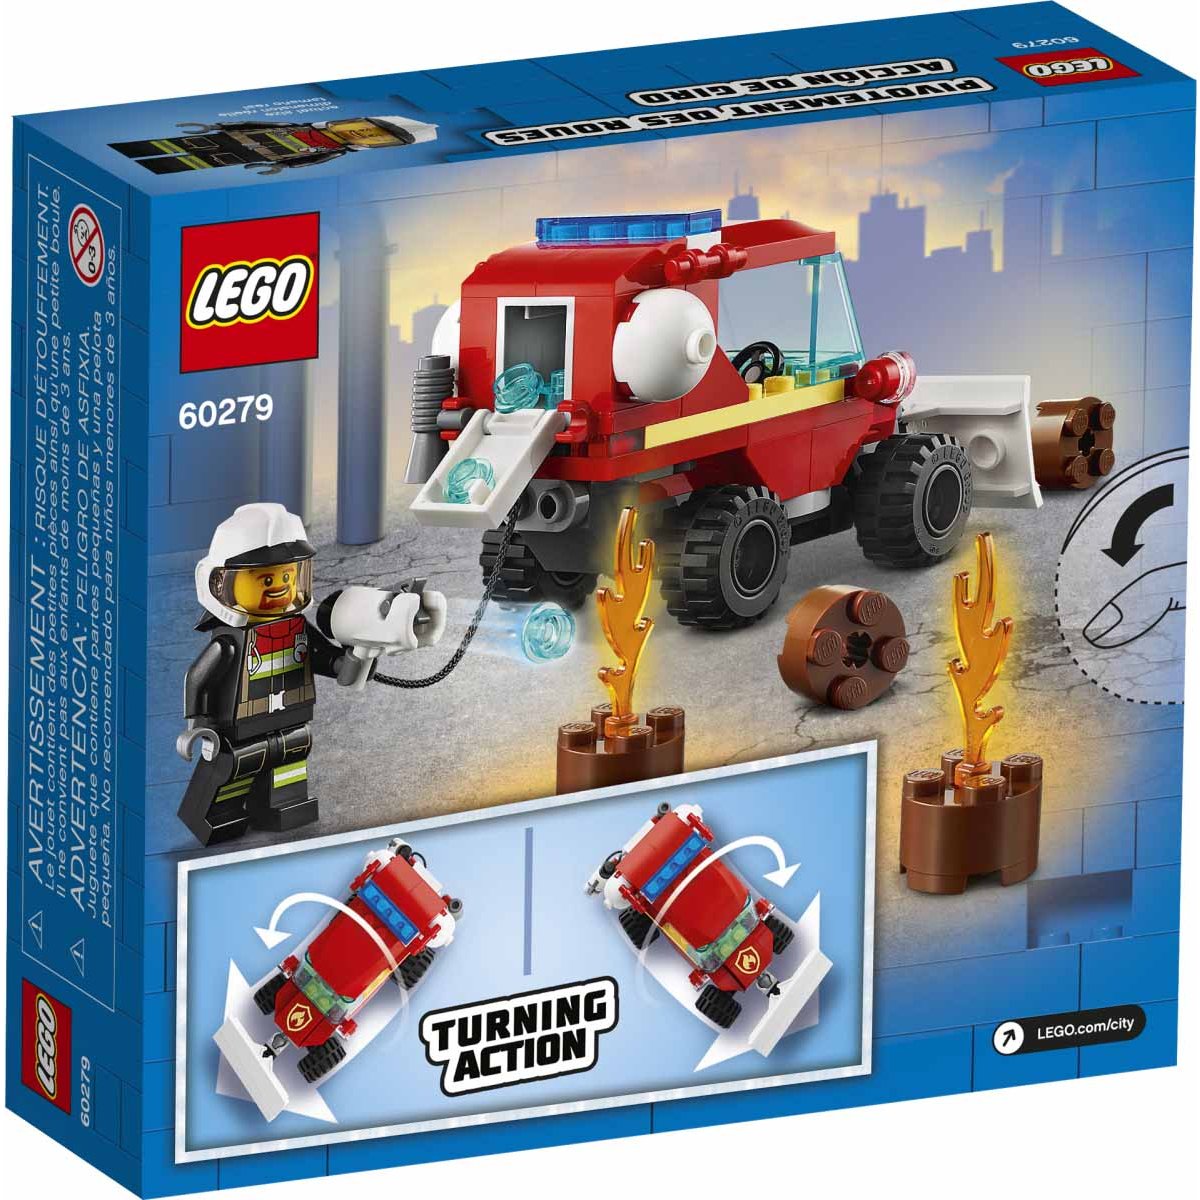 Camioneta de Asistencia de Bomberos Lego City